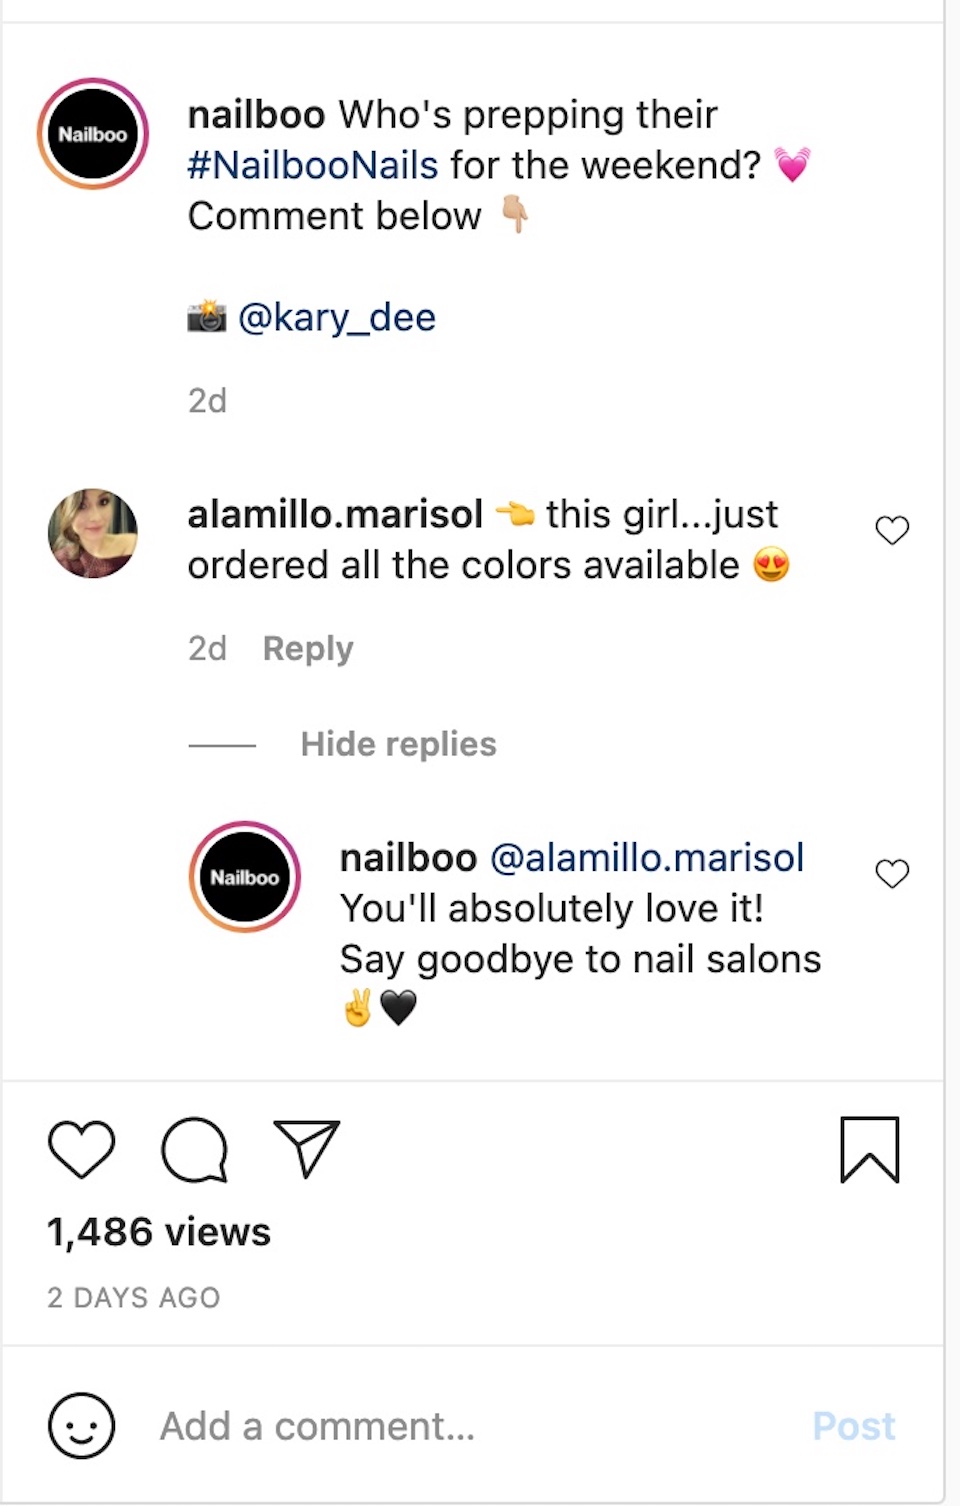 美甲產品公司 Nailboo 在其 Instagram 帳戶上的一條貼文中與評論者互動。